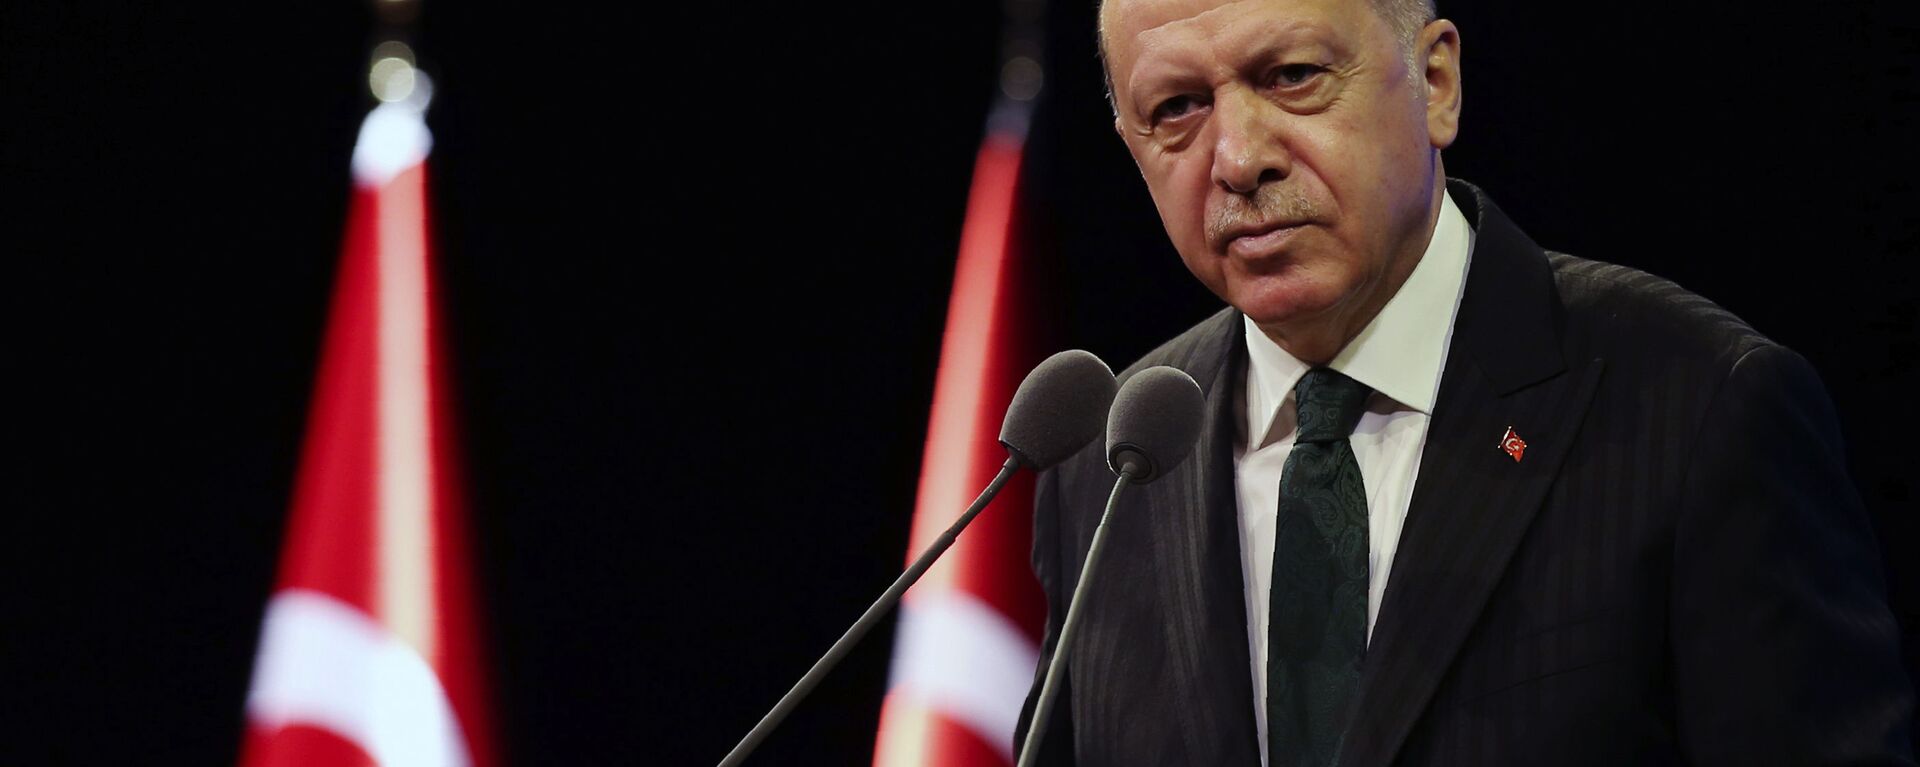 اردوغان: ترکیه دوست دارد نیروهای امریکایی از سوریه و عراق به مانند افغانستان بیرون شوند - اسپوتنیک افغانستان  , 1920, 26.09.2021